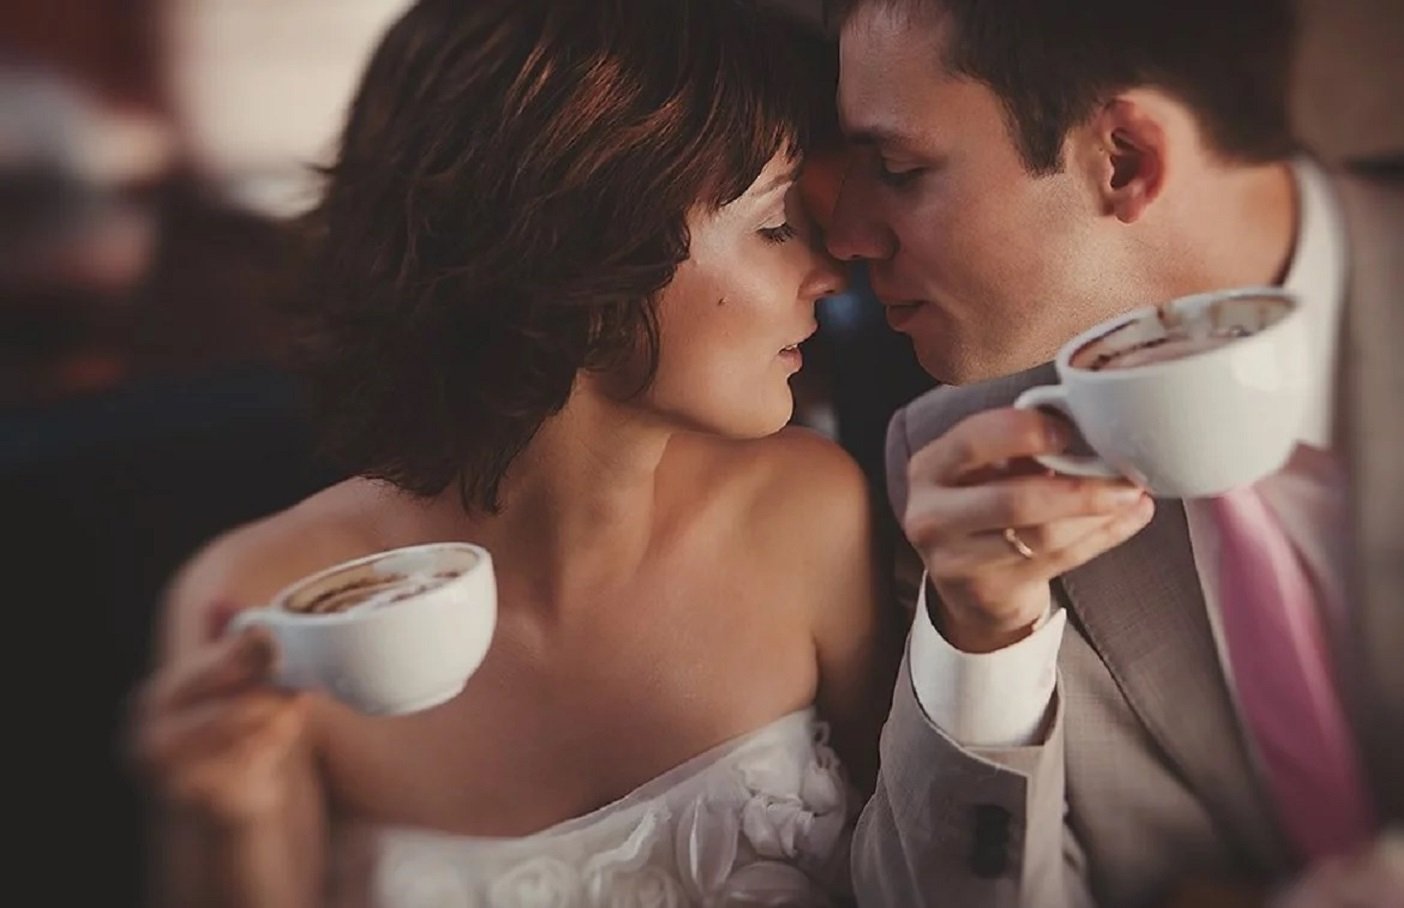 По крепче чуть чуть. Кофе на двоих. Романтическое утро. Доброе утро кофе вдвоем. Чаепитие вдвоем.